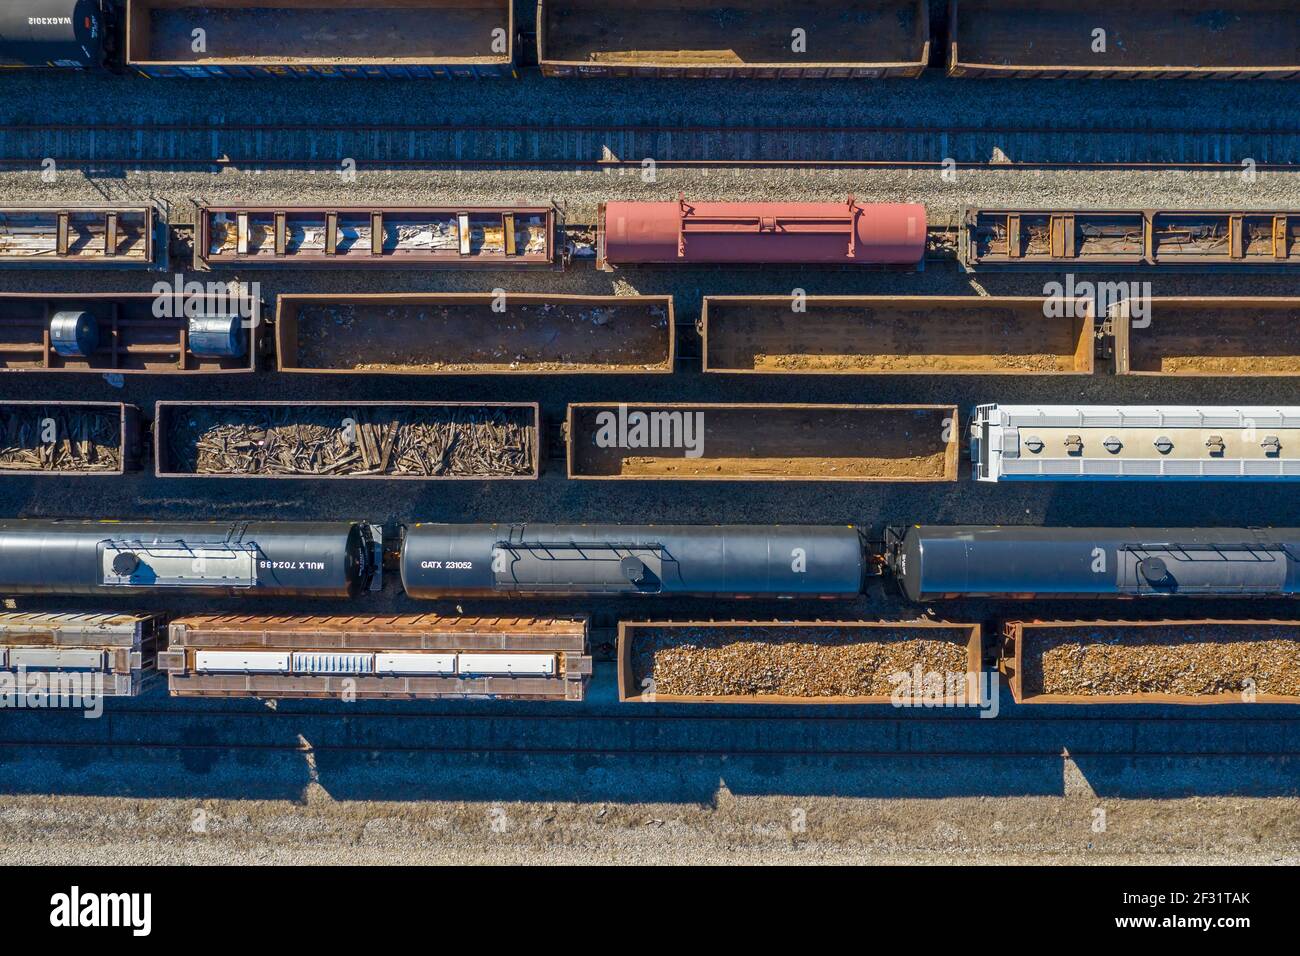 Detroit, Michigan - voitures de chemin de fer attendant à un chantier ferroviaire dans le sud-ouest de Detroit. Banque D'Images